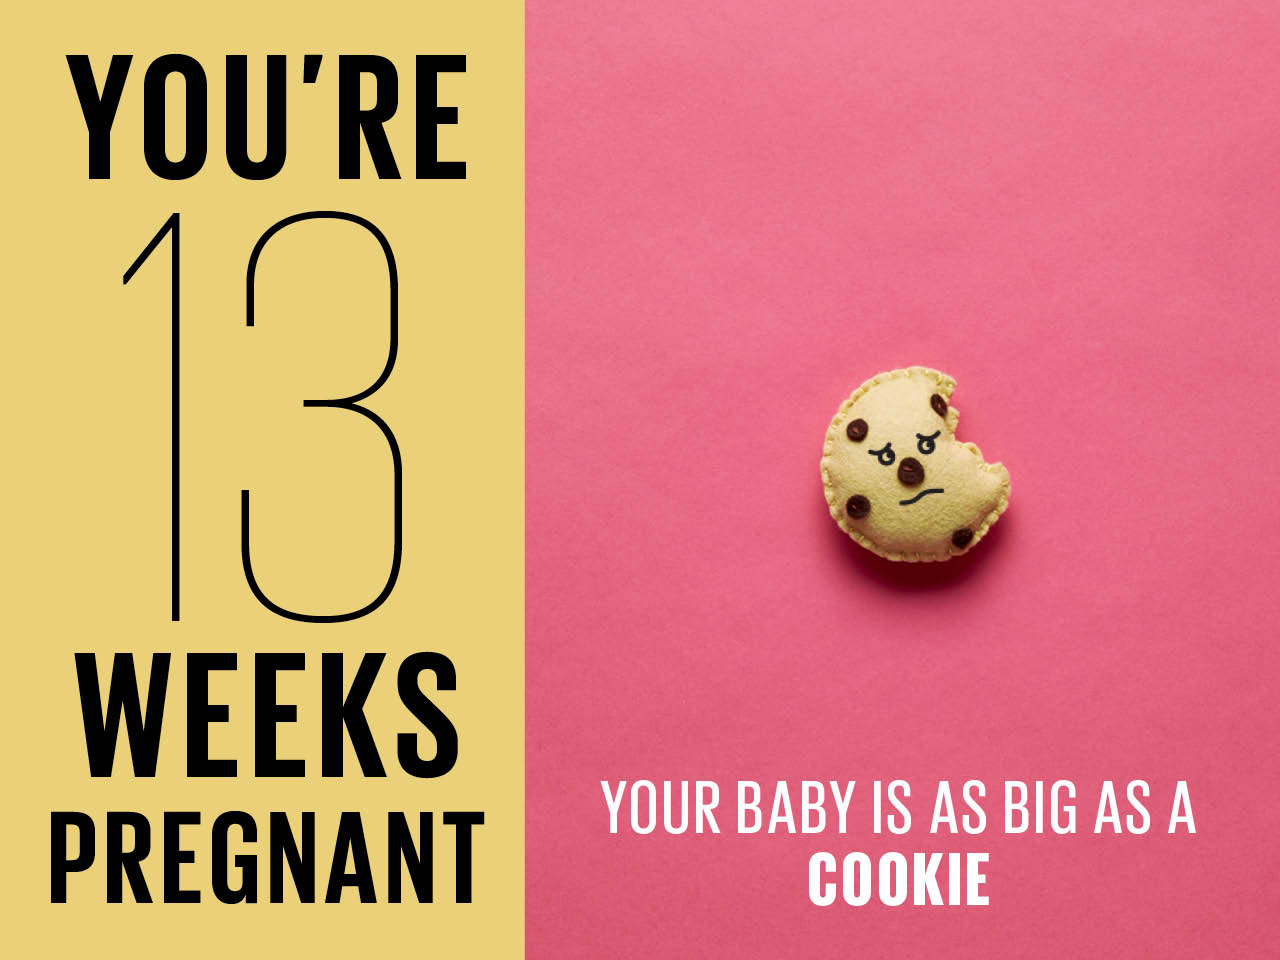 Kích thước thai nhi 13 tuần tuổi to như 1 chiếc bánh quy